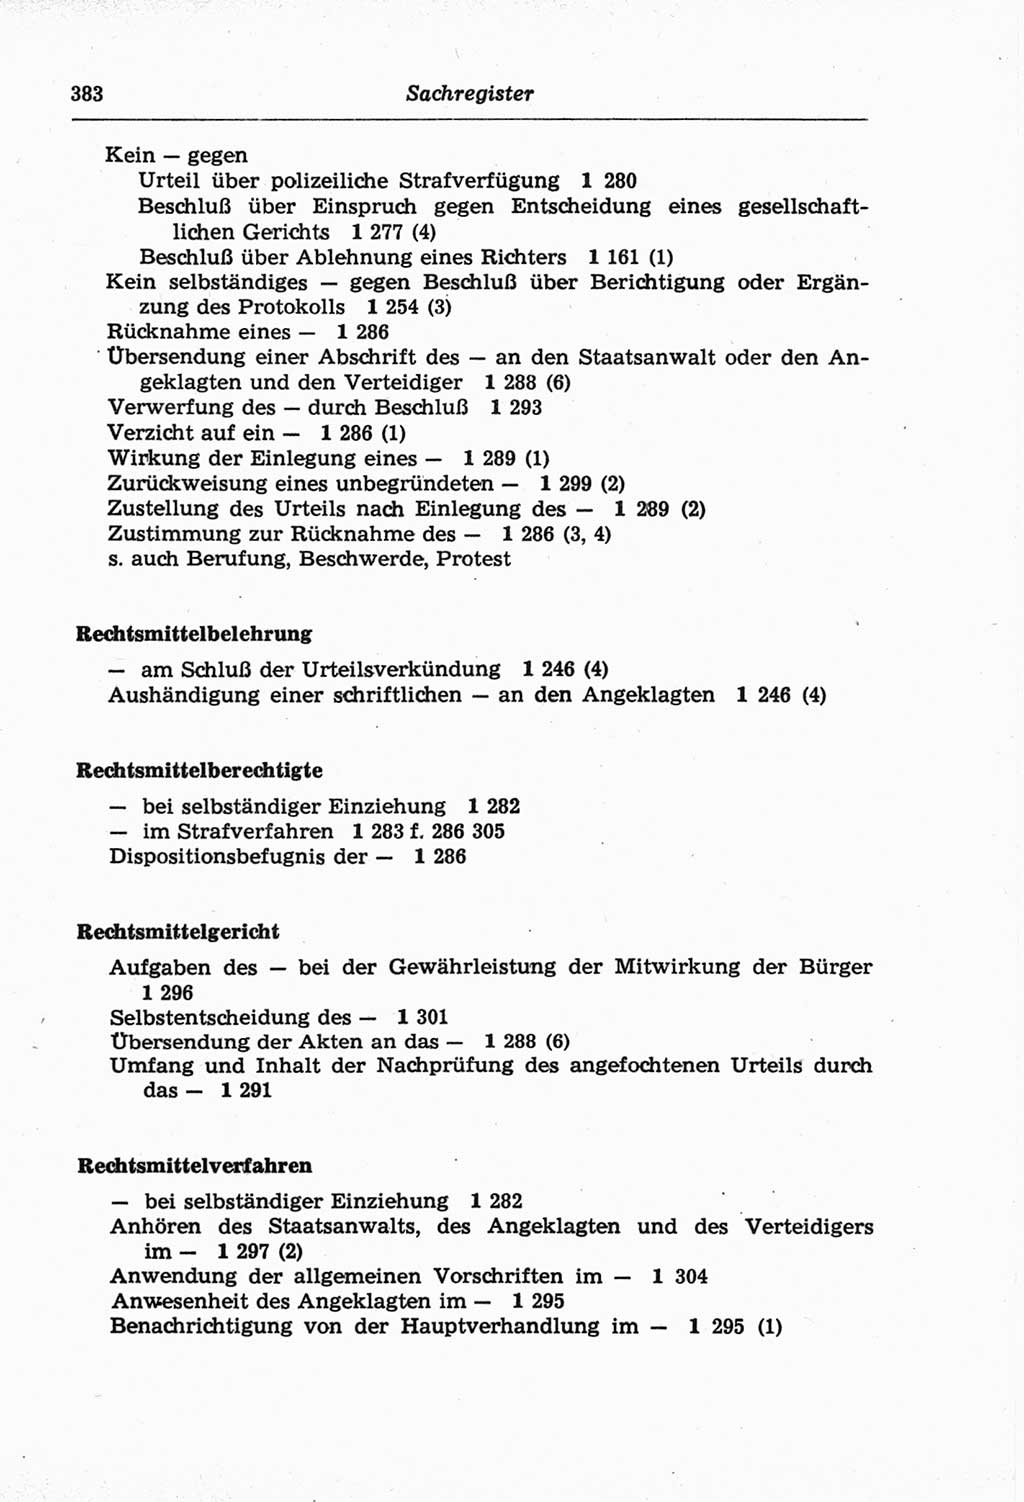 Strafprozeßordnung (StPO) der Deutschen Demokratischen Republik (DDR) und angrenzende Gesetze und Bestimmungen 1968, Seite 383 (StPO Ges. Bstgn. DDR 1968, S. 383)